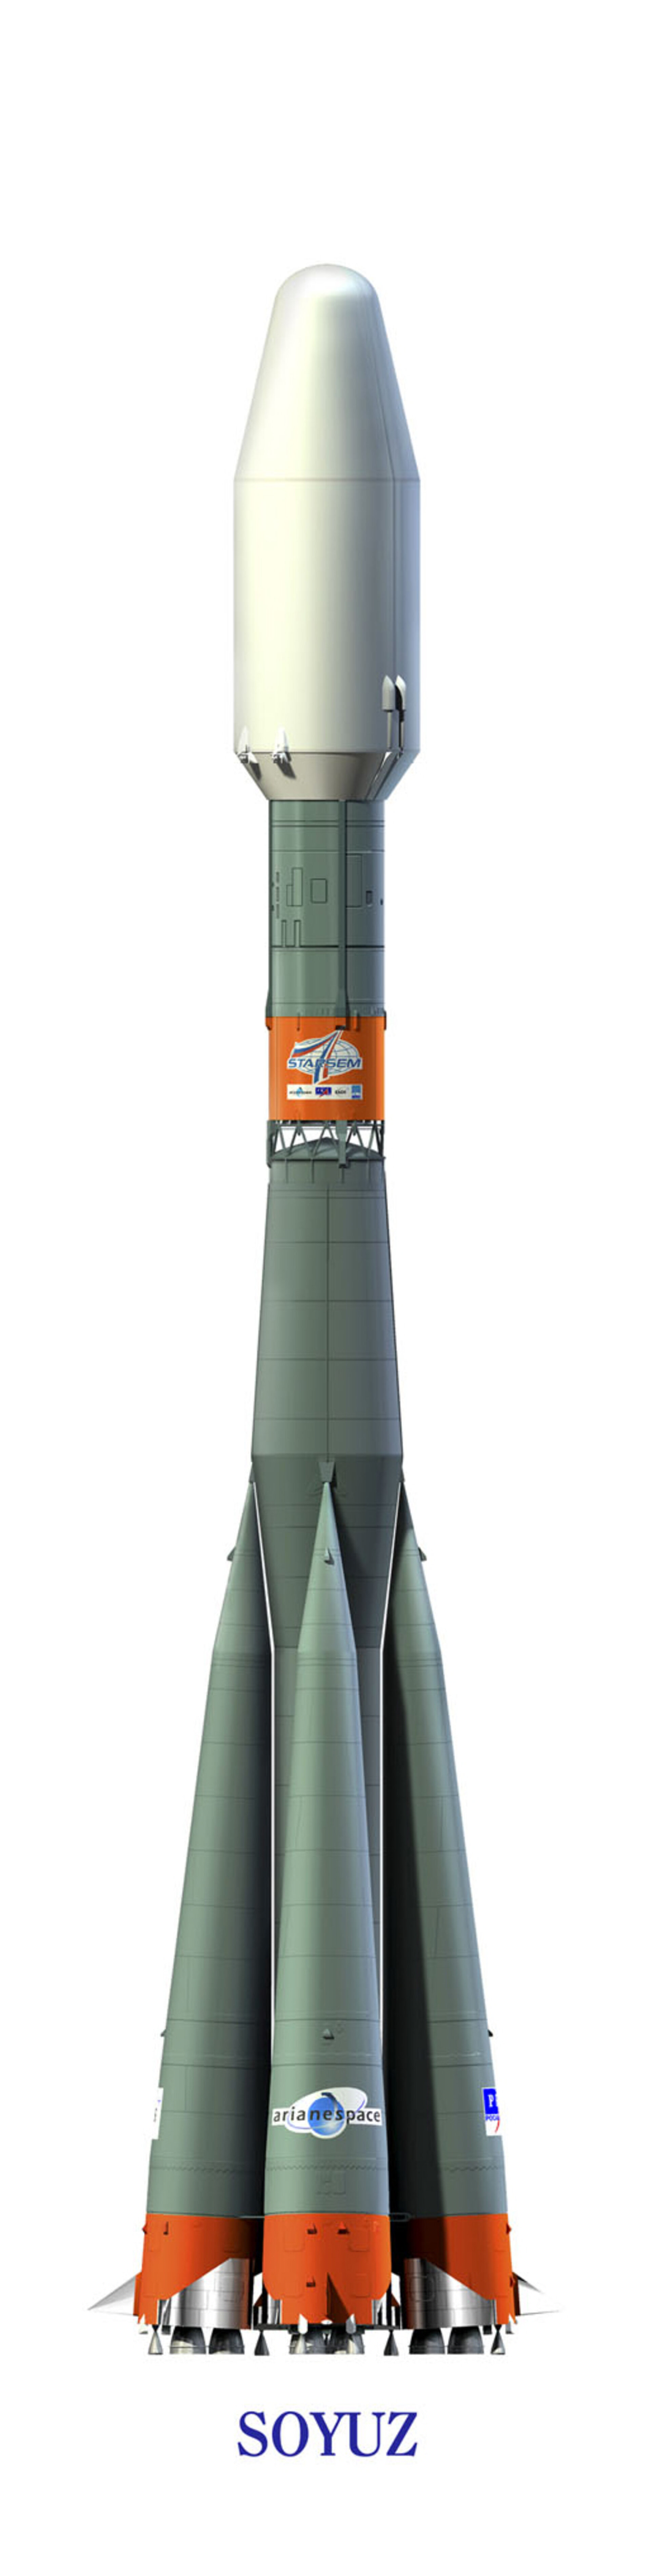 Die Soyuz-Trägerrakete